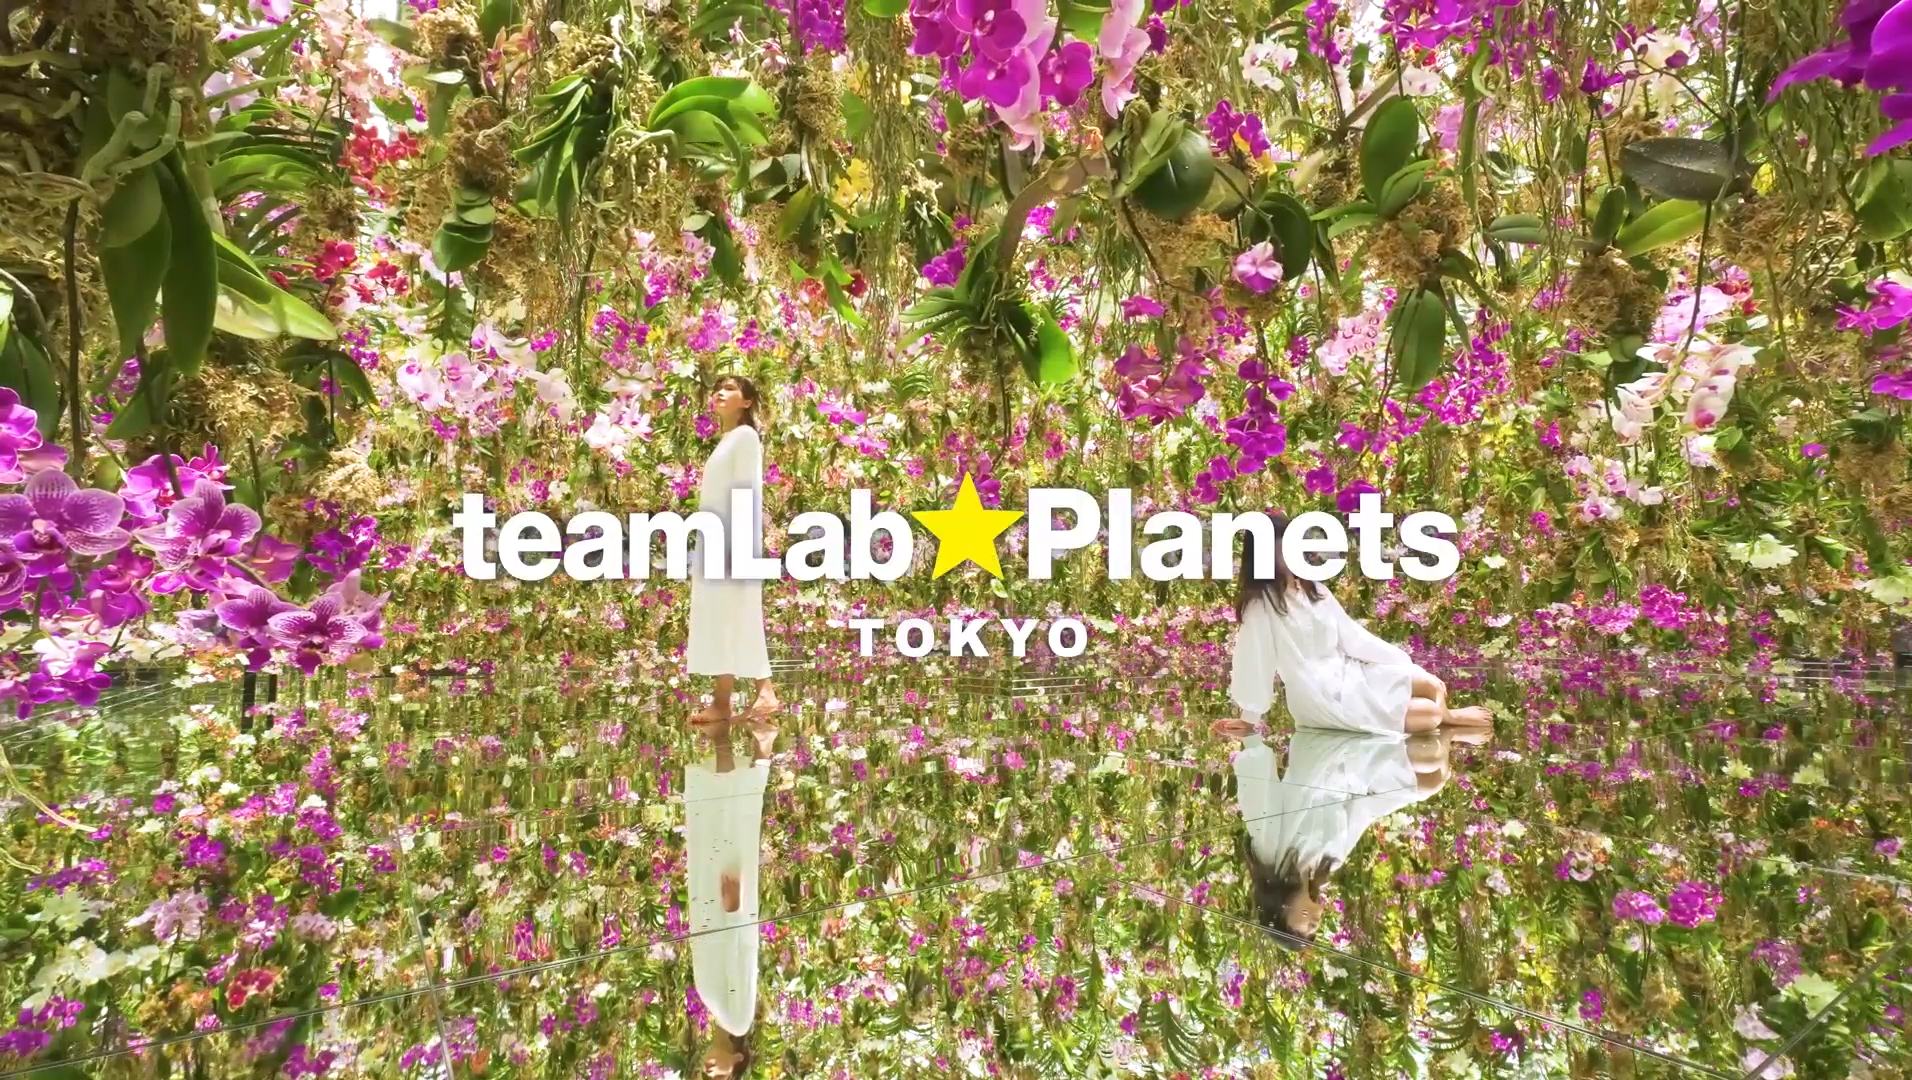 teamLab, Exhibition view of teamLab Planets, 2018, Toyosu, Tokyo © teamLab